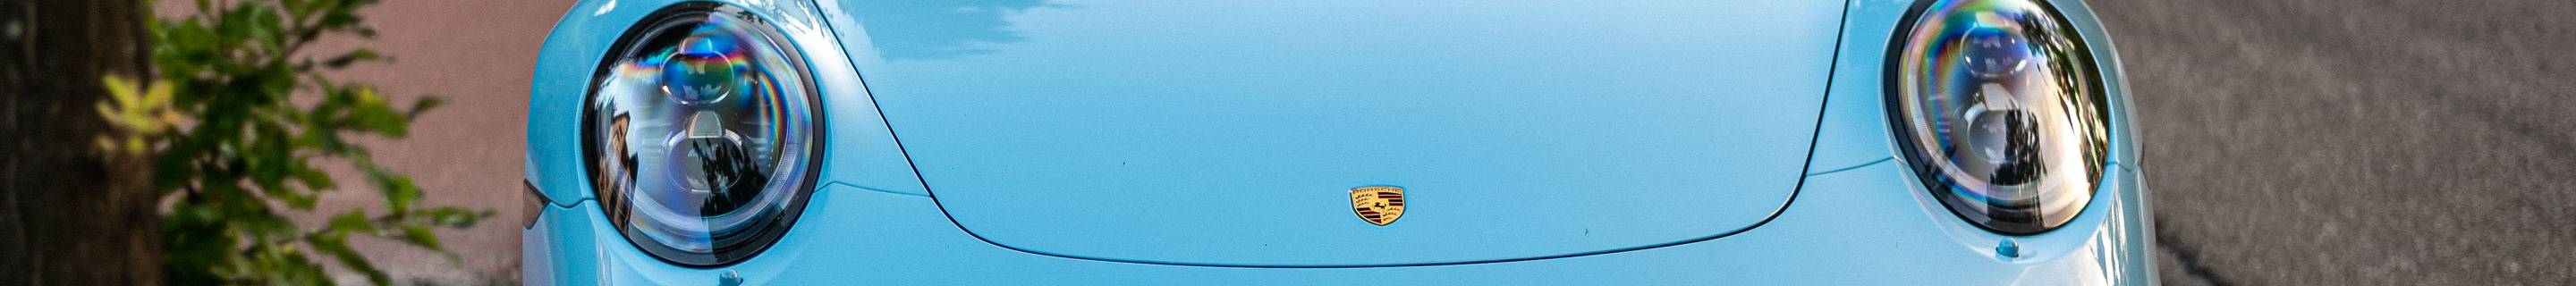 Porsche 991 Targa 4S Exclusive Edition